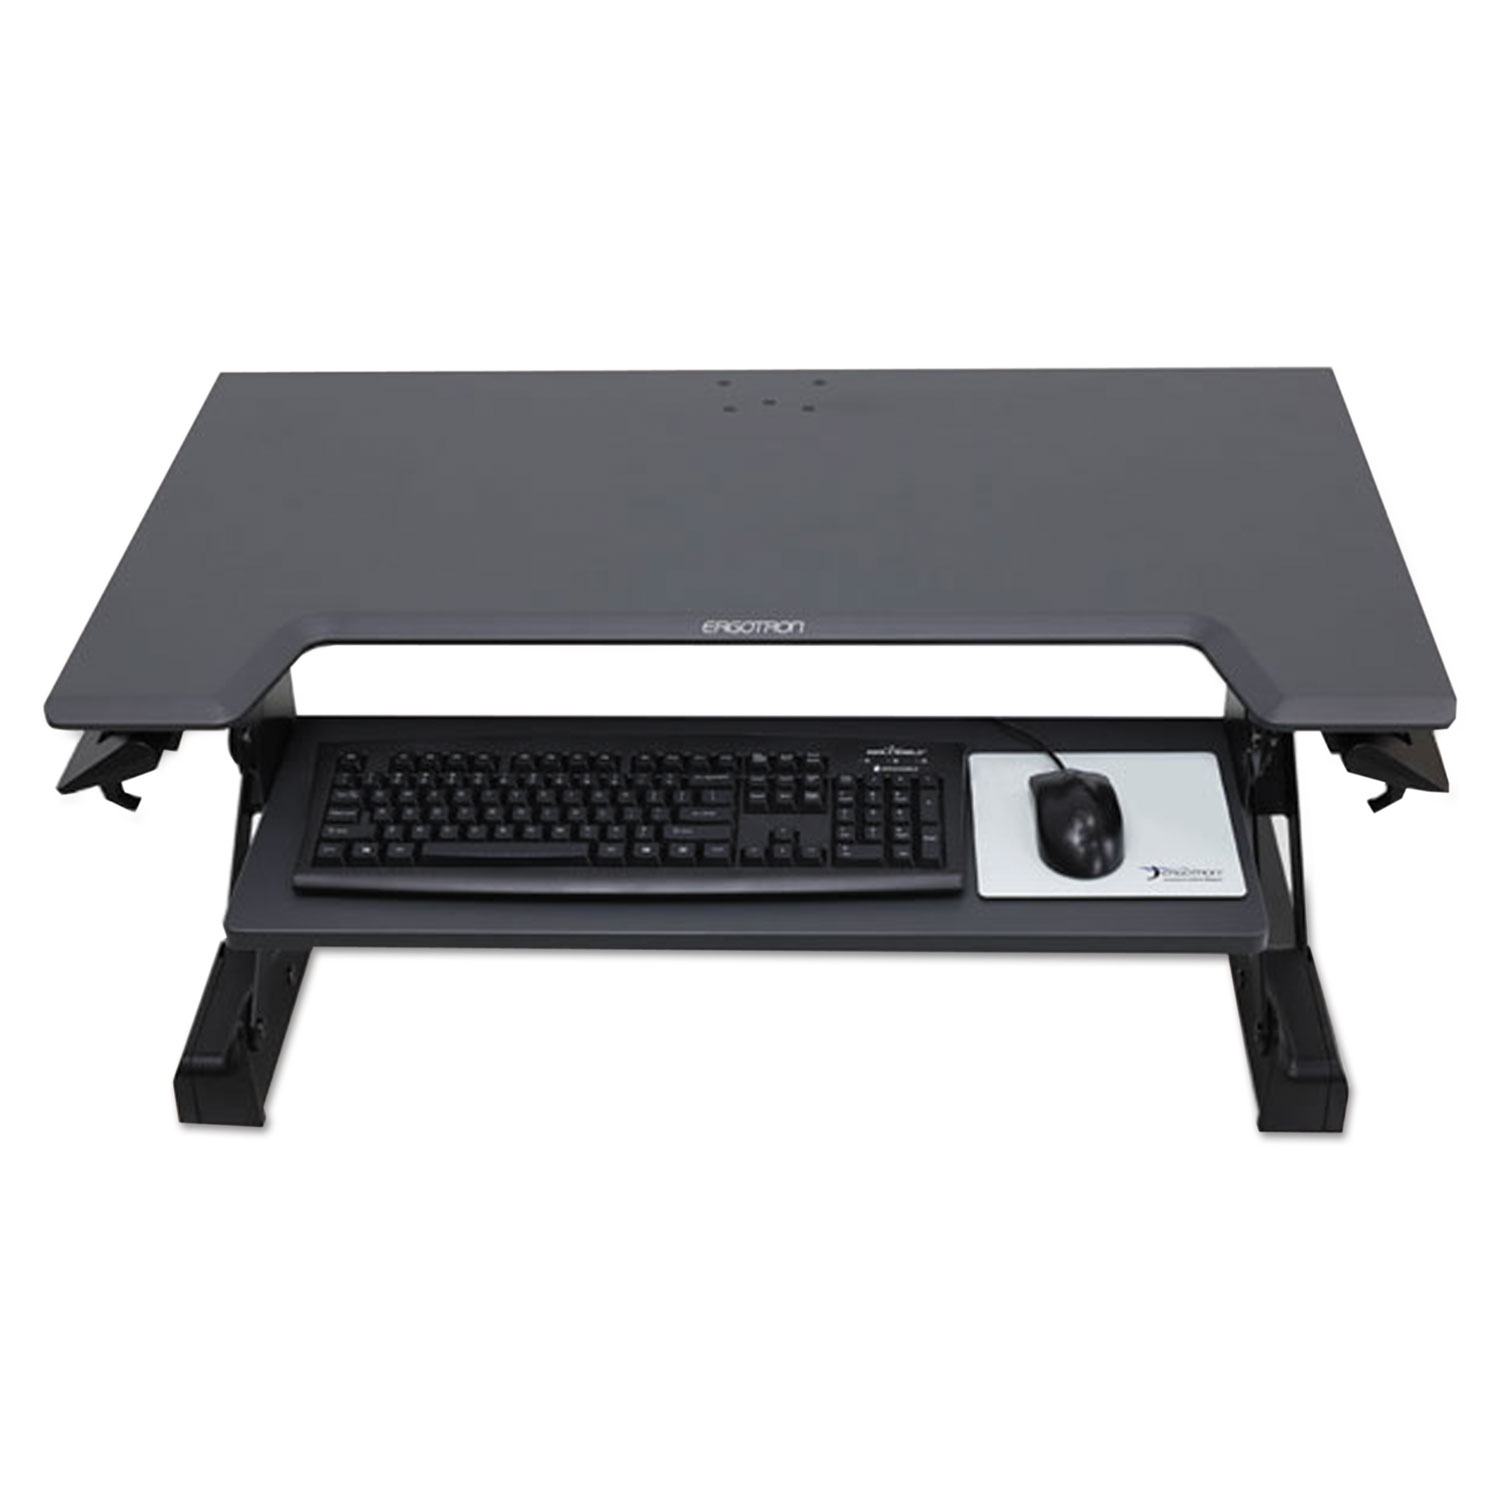 Ergotron WorkFit-TL Adjustable Sit to Stand Standing Desk Workstation Converter - image 3 of 6